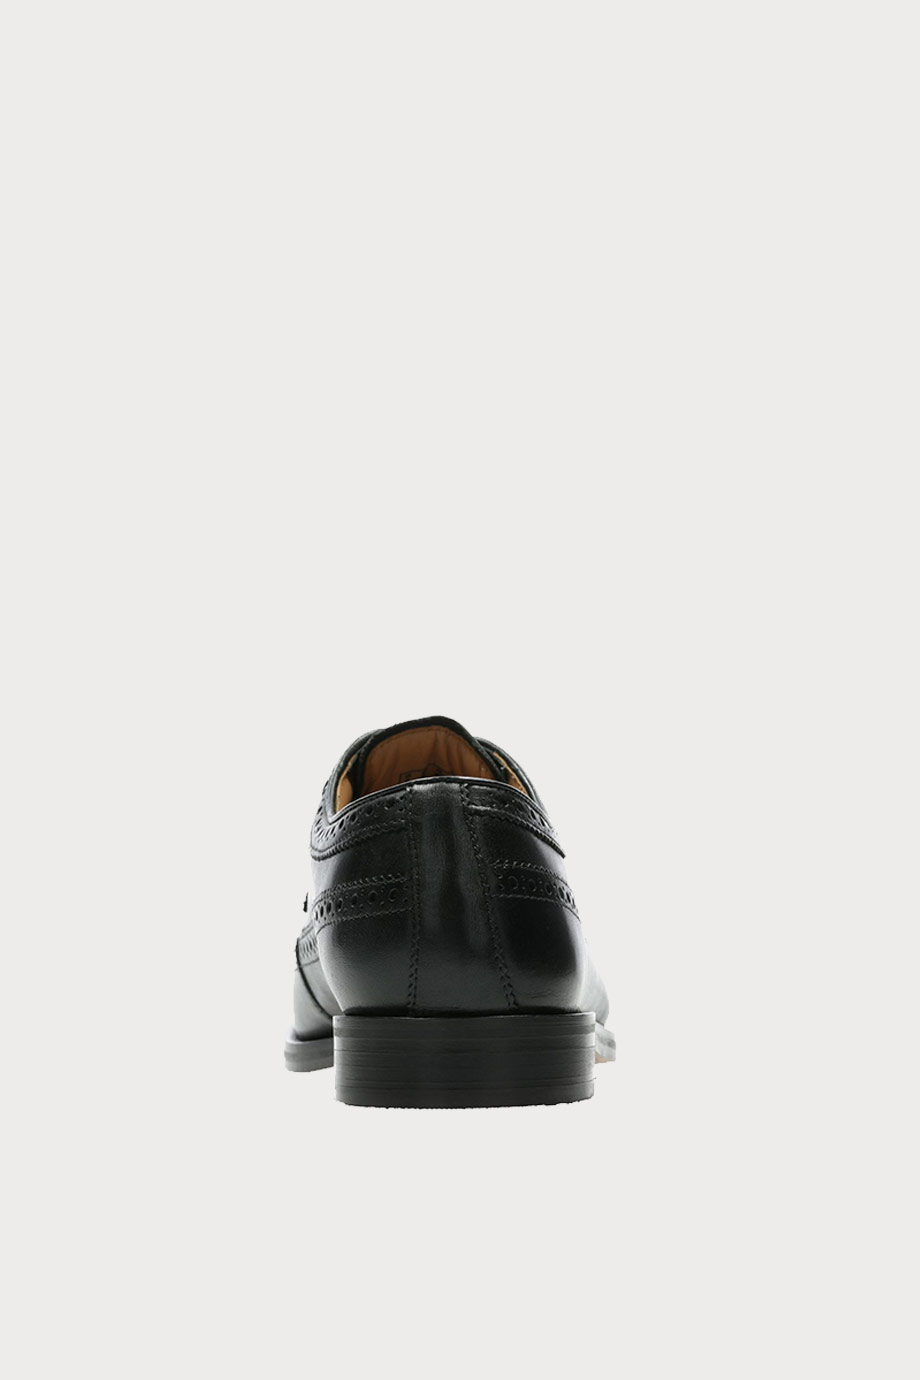 spiridoula metheniti shoes xalkida p coling limit black leather clarks 6